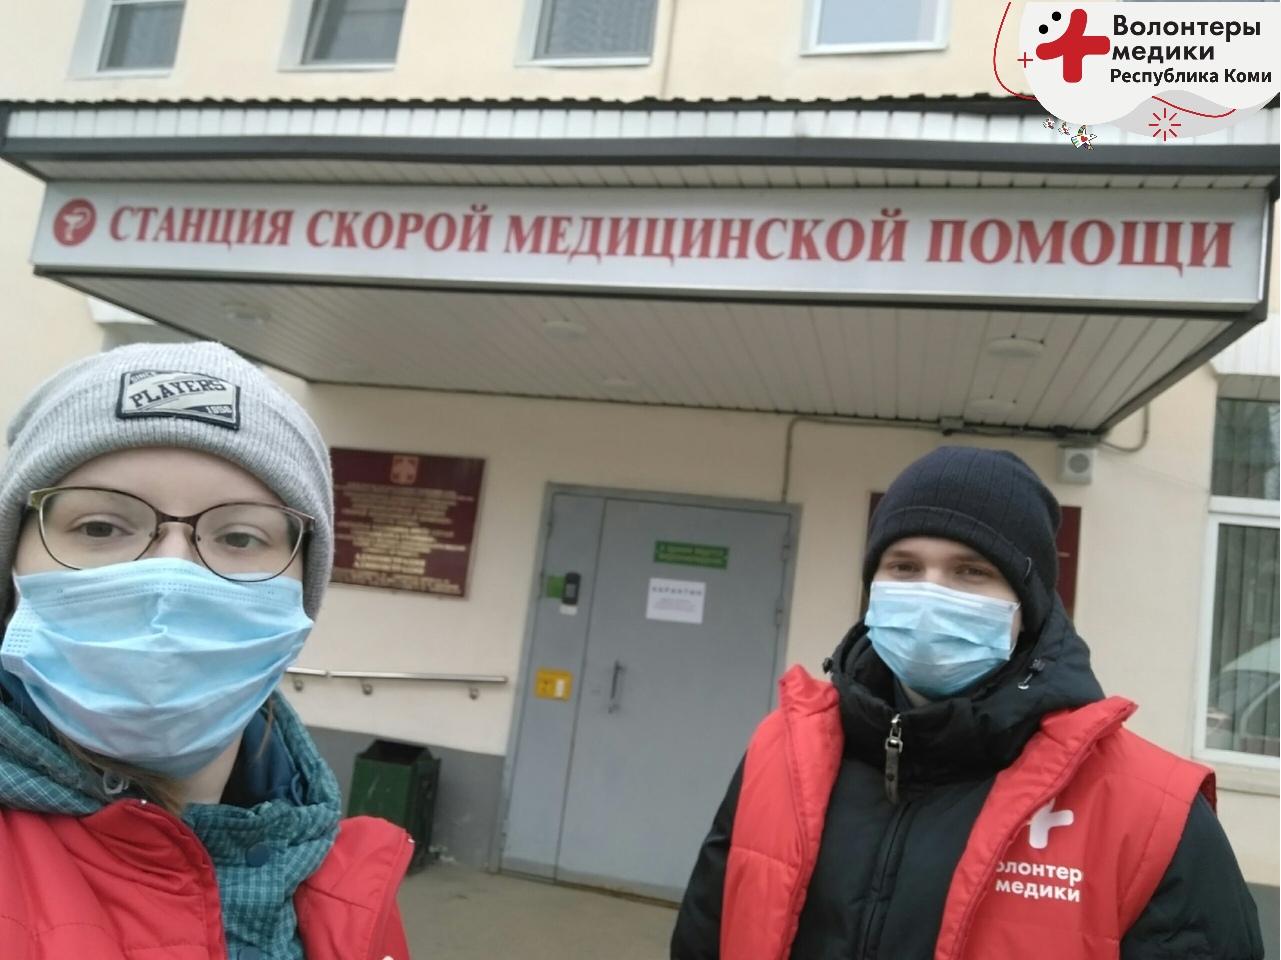 Сбербанк в Коми передал «Волонтерам-медикам» 6 тысяч масок